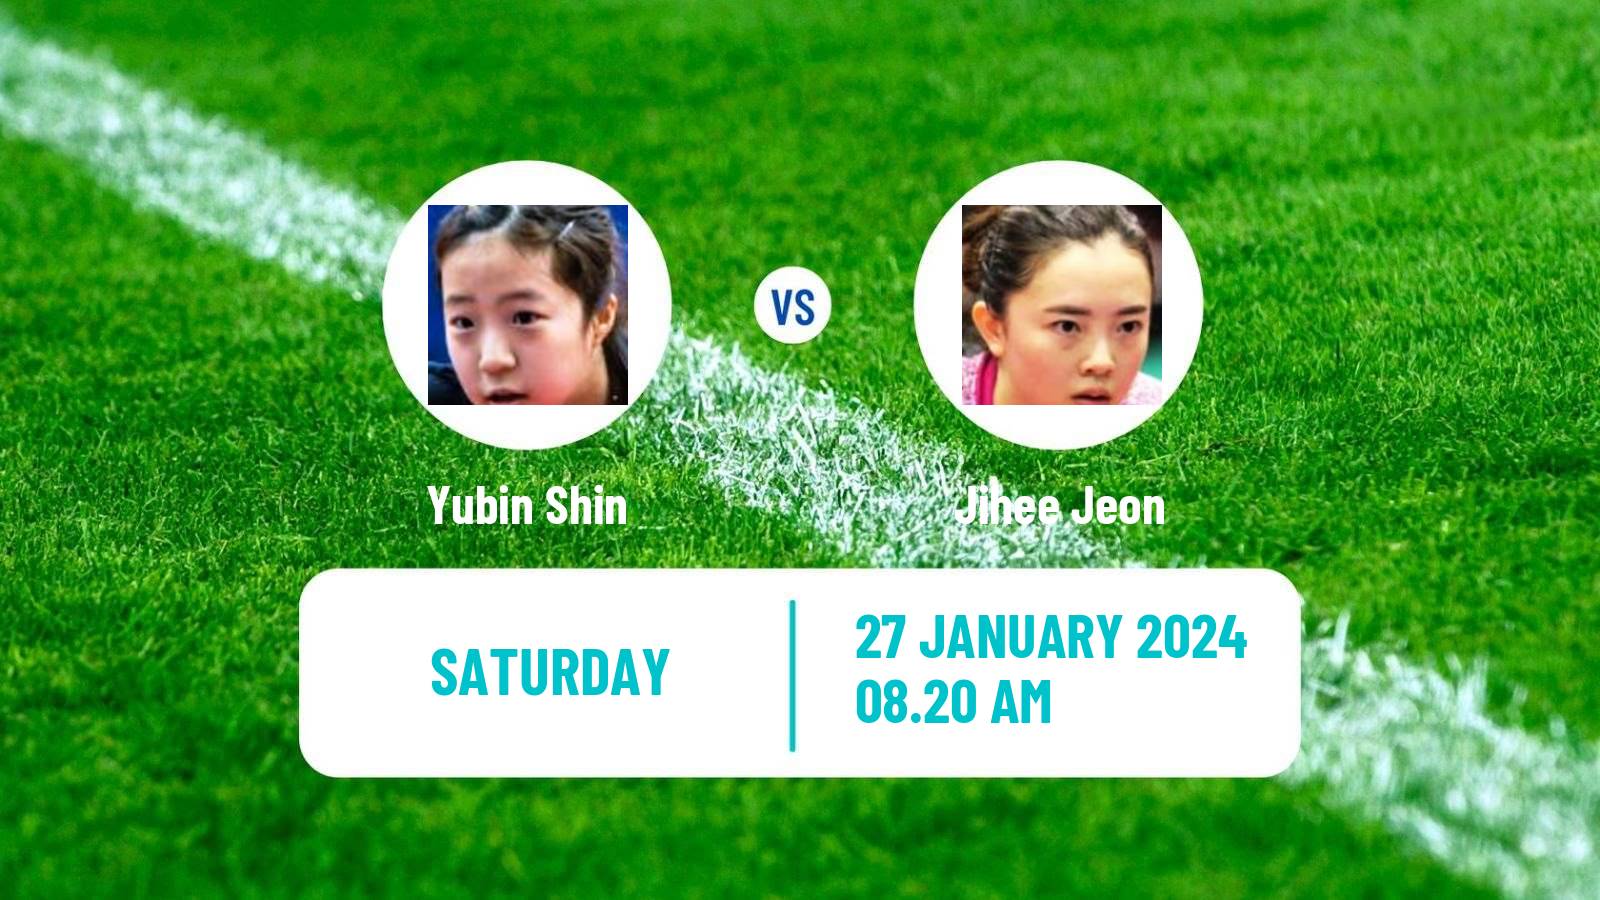 Table tennis Wtt Star Contender Goa Women Yubin Shin - Jihee Jeon